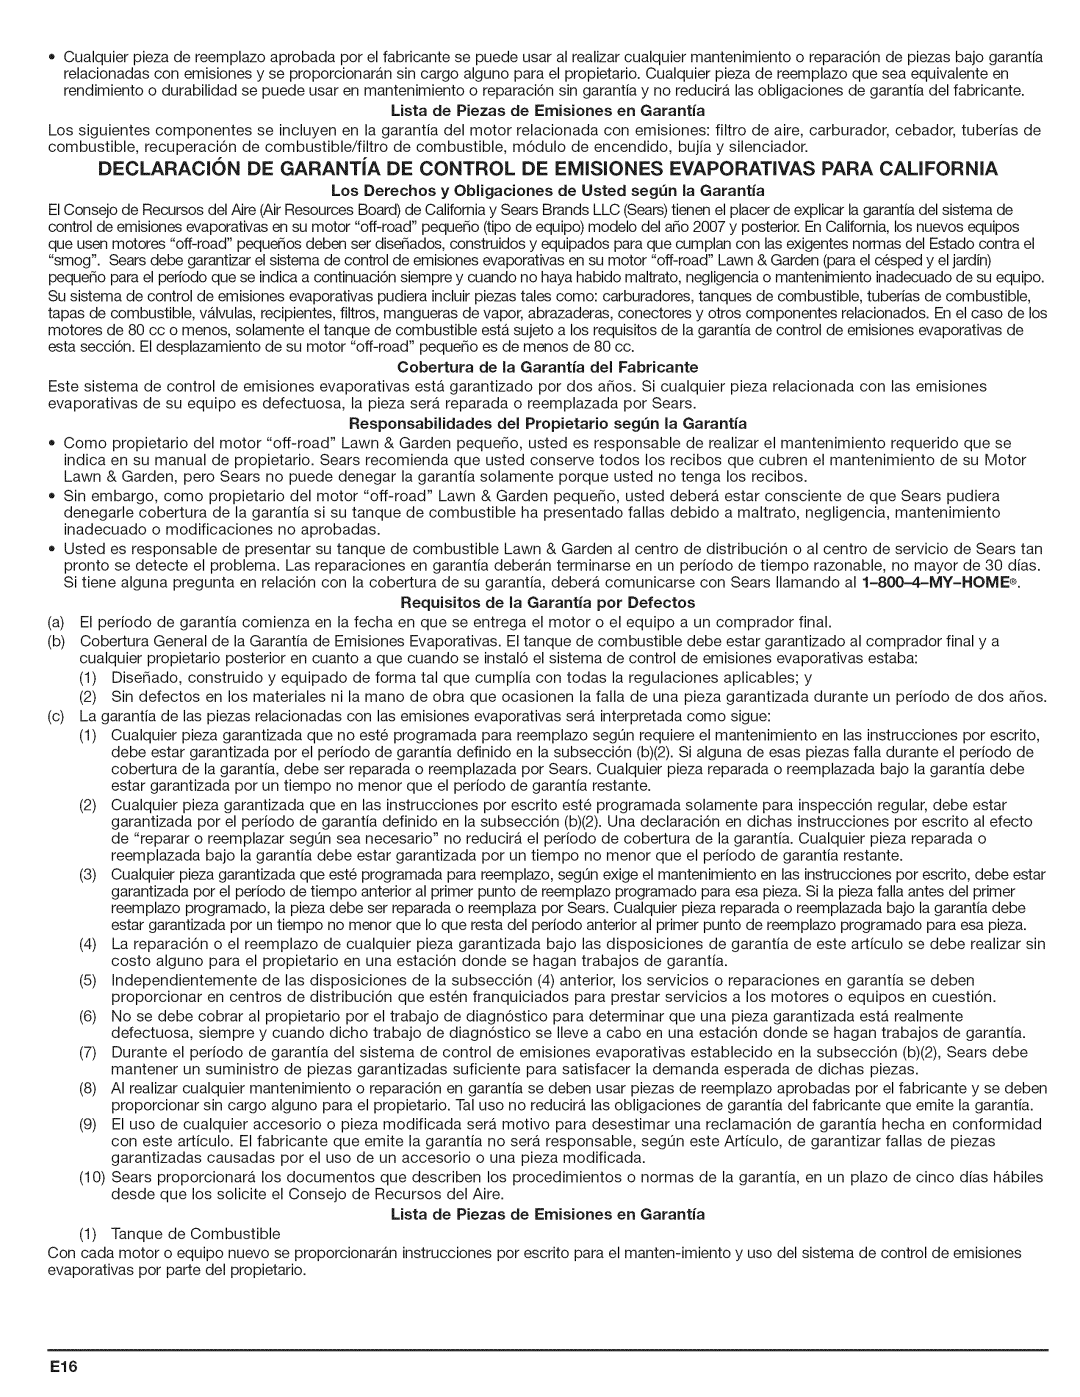 Craftsman 316.794801 manual Lista de Piezas de Emisiones en Garantia, Requisitos de la Garantia pot Defectos 